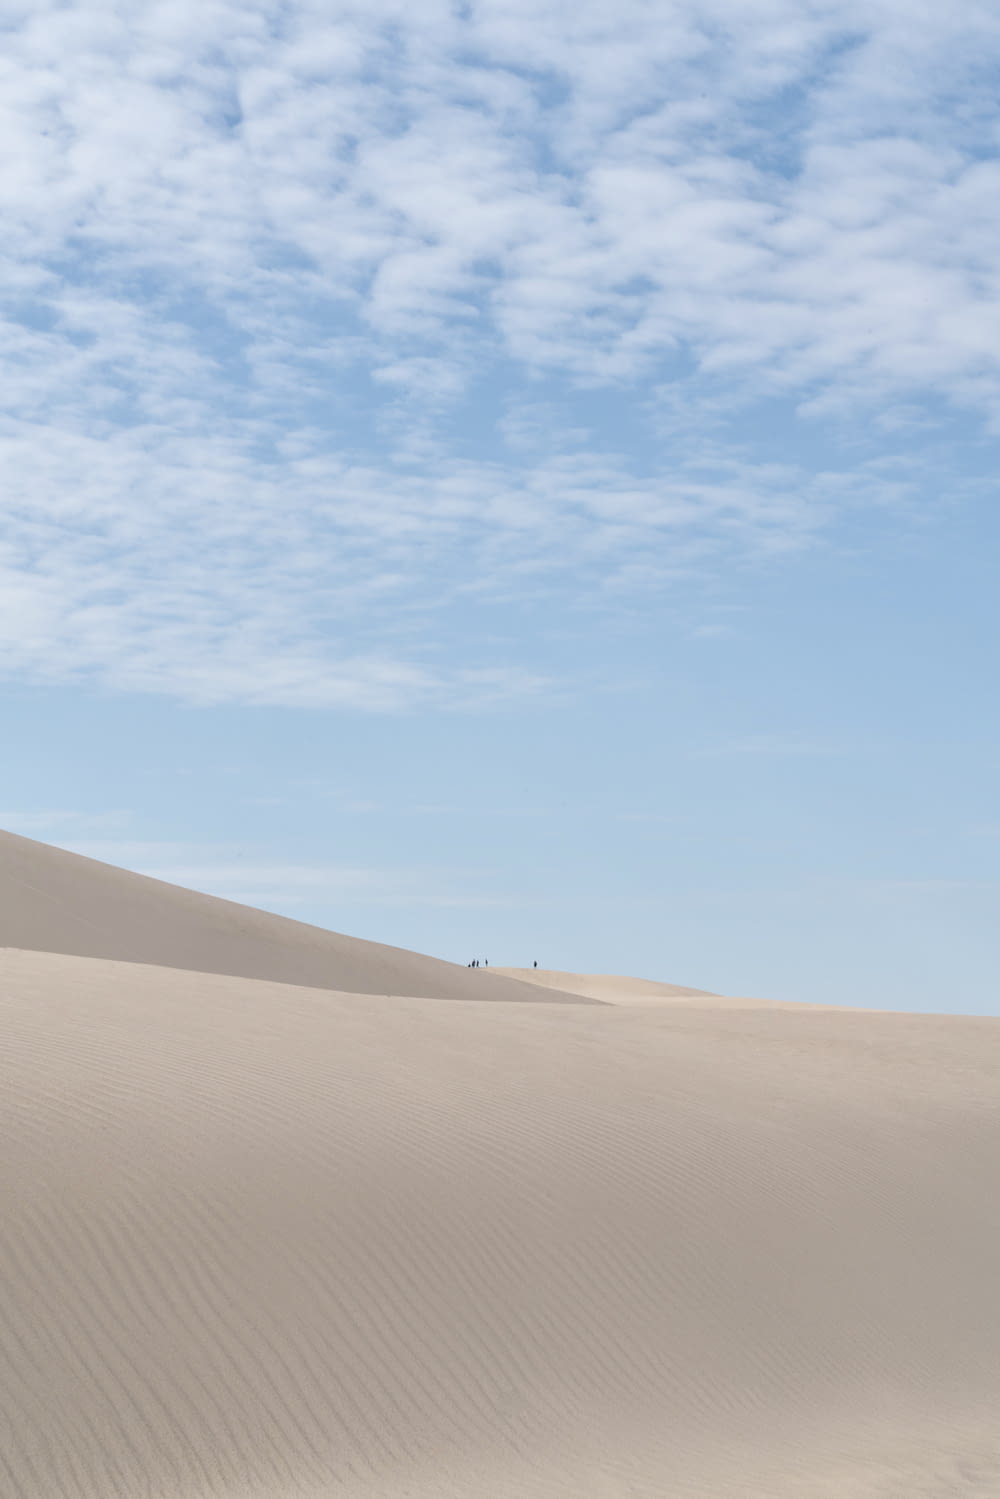 a sandy desert with a blue sky